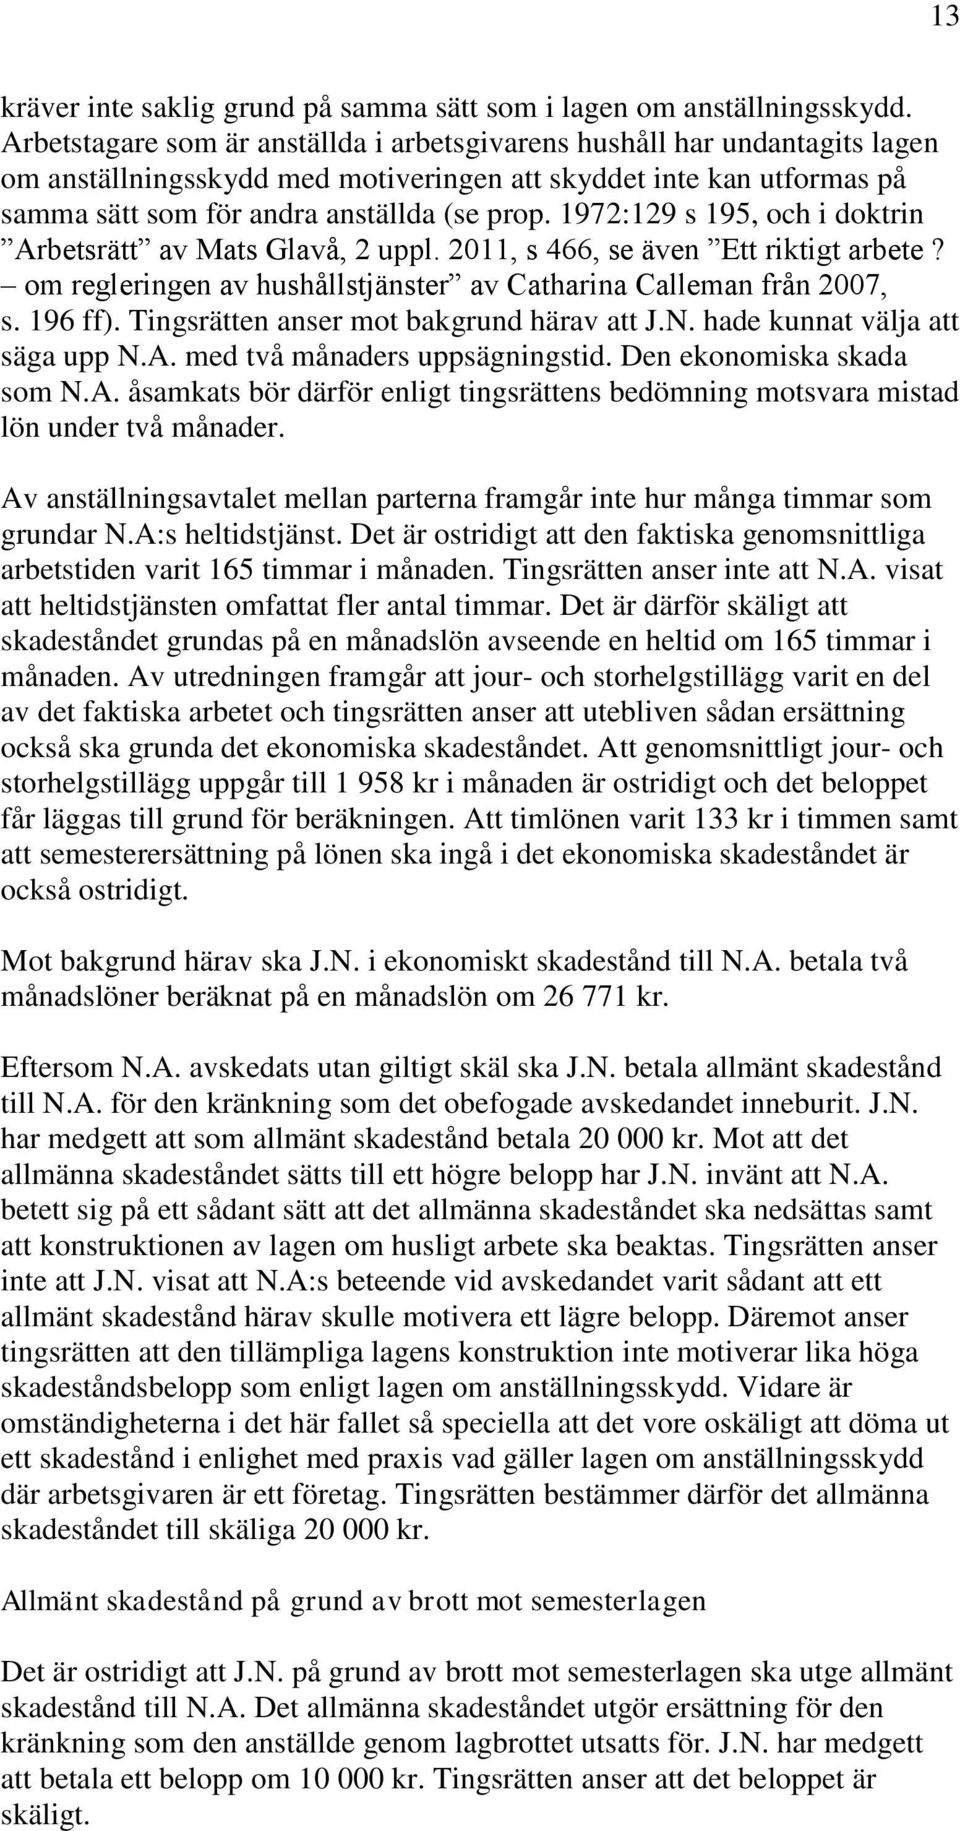 1972:129 s 195, och i doktrin Arbetsrätt av Mats Glavå, 2 uppl. 2011, s 466, se även Ett riktigt arbete? om regleringen av hushållstjänster av Catharina Calleman från 2007, s. 196 ff).